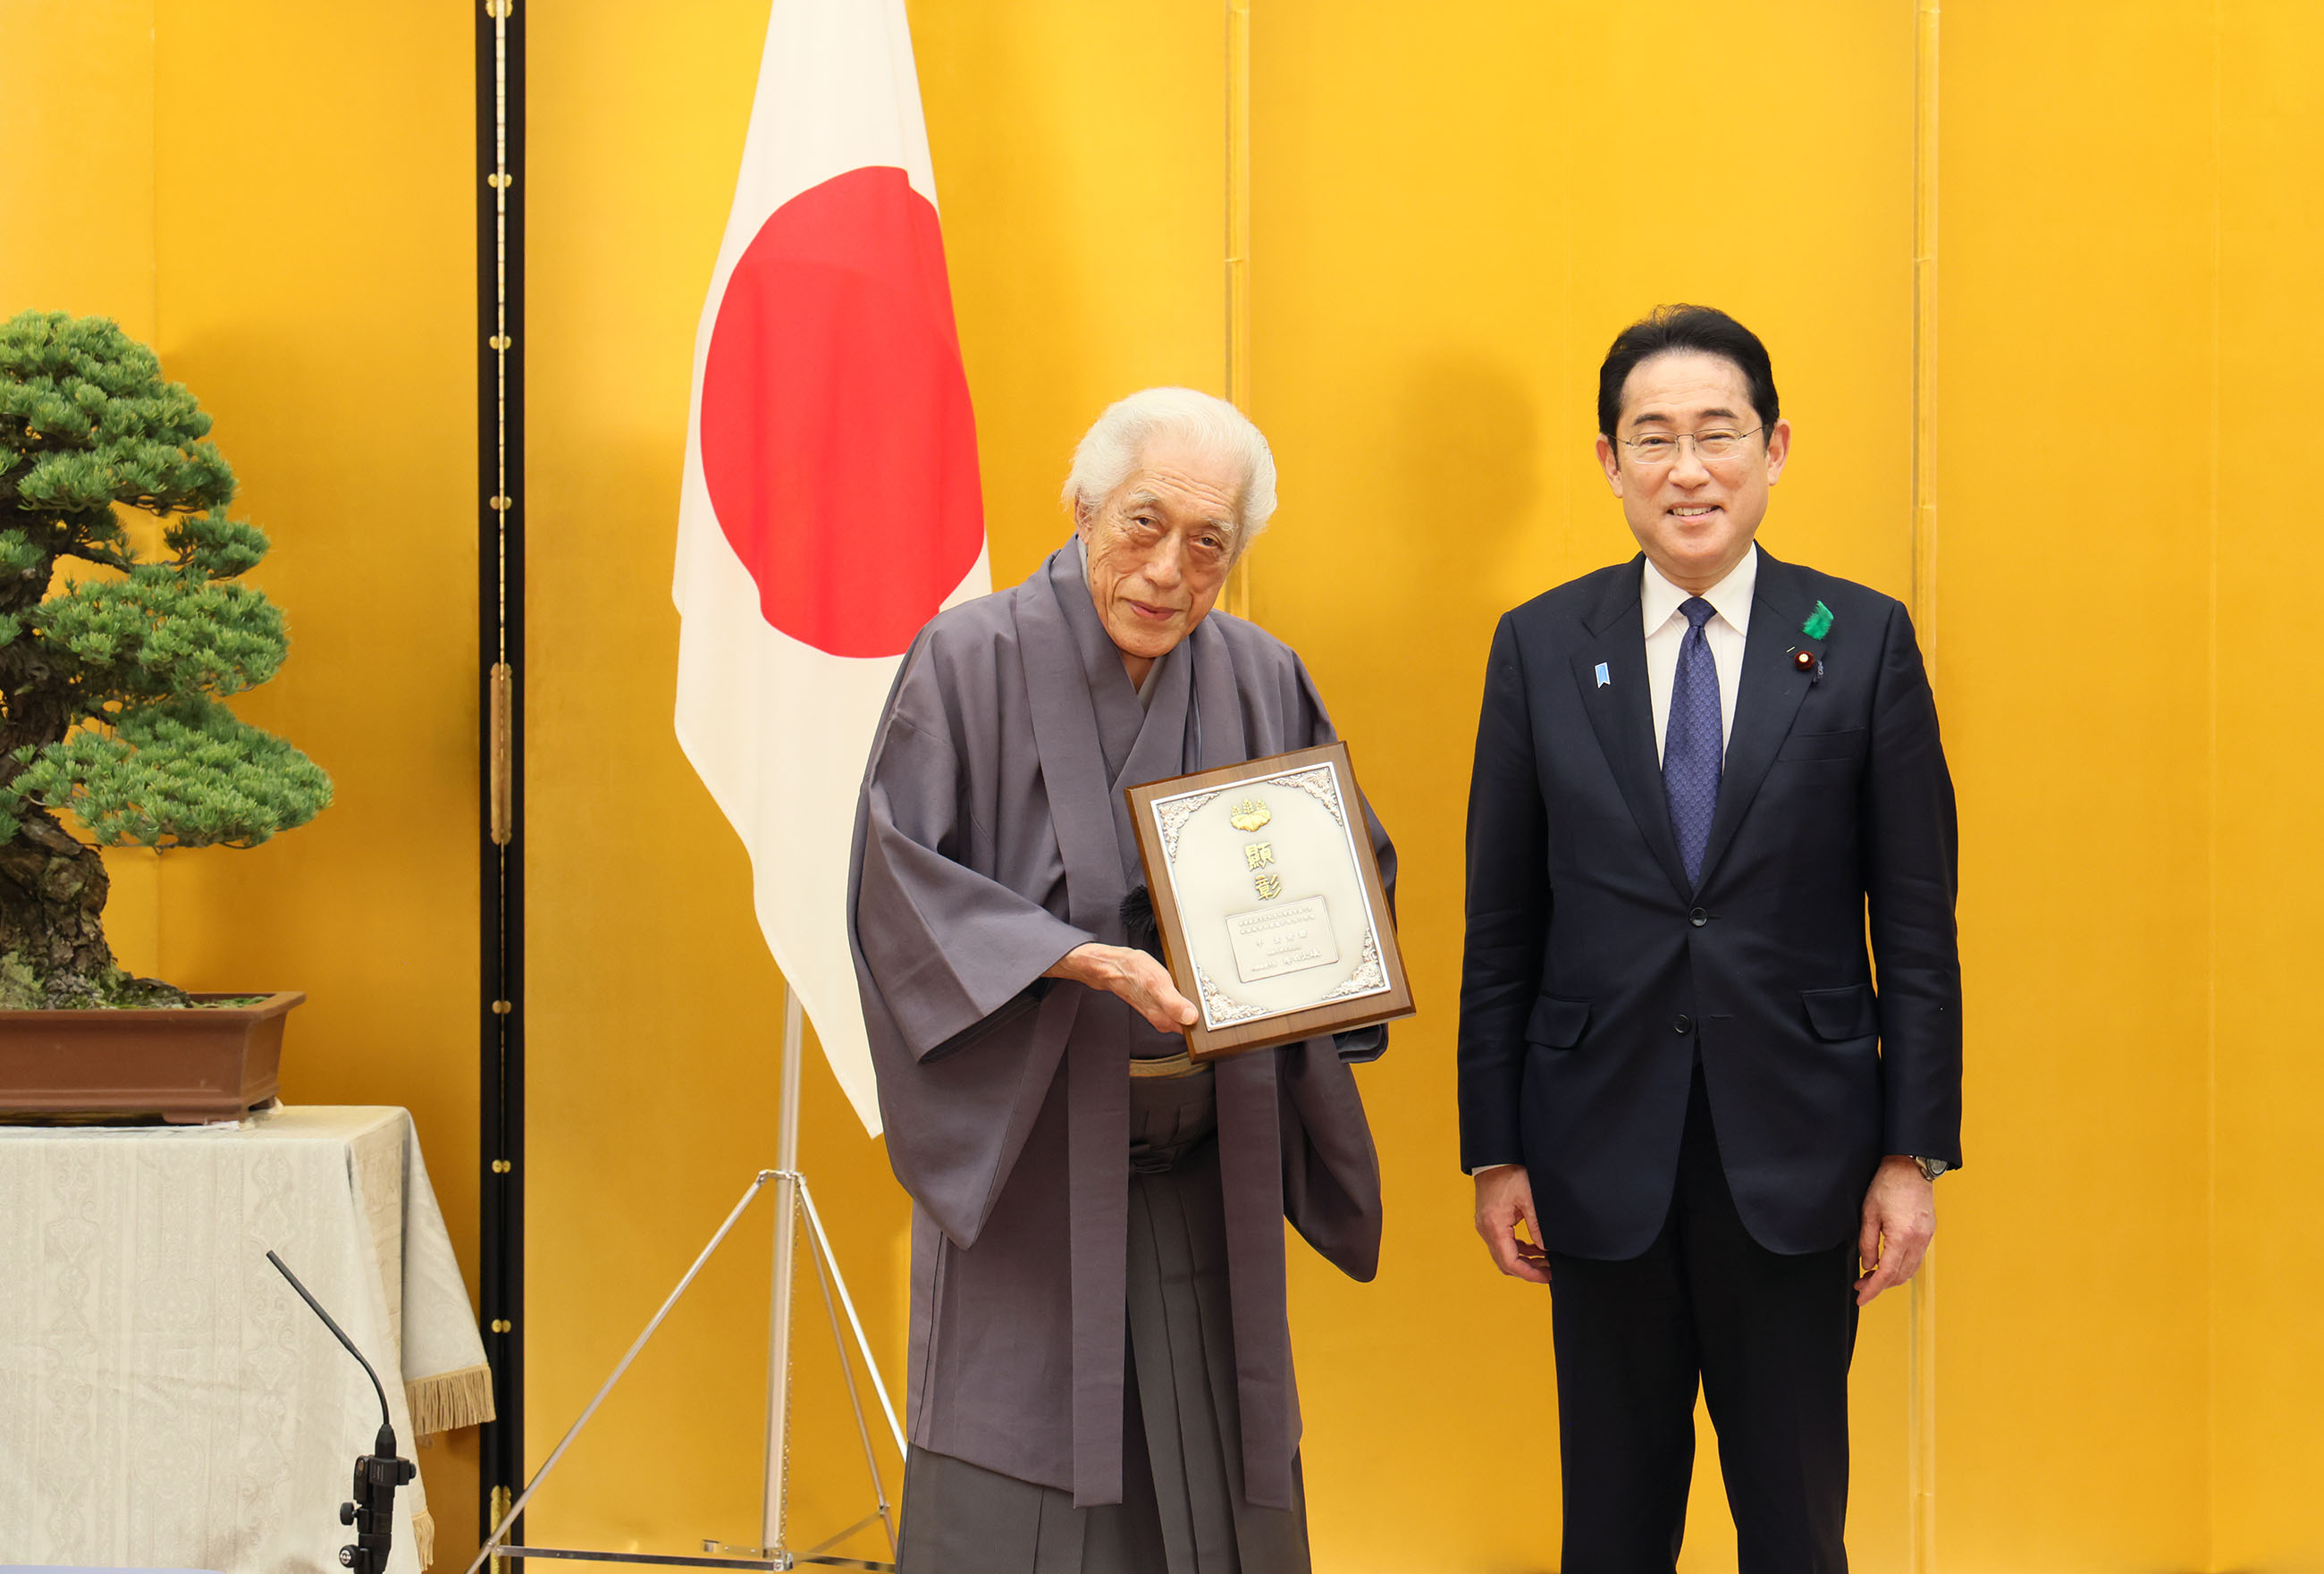 Prime Minister’s Award Ceremony